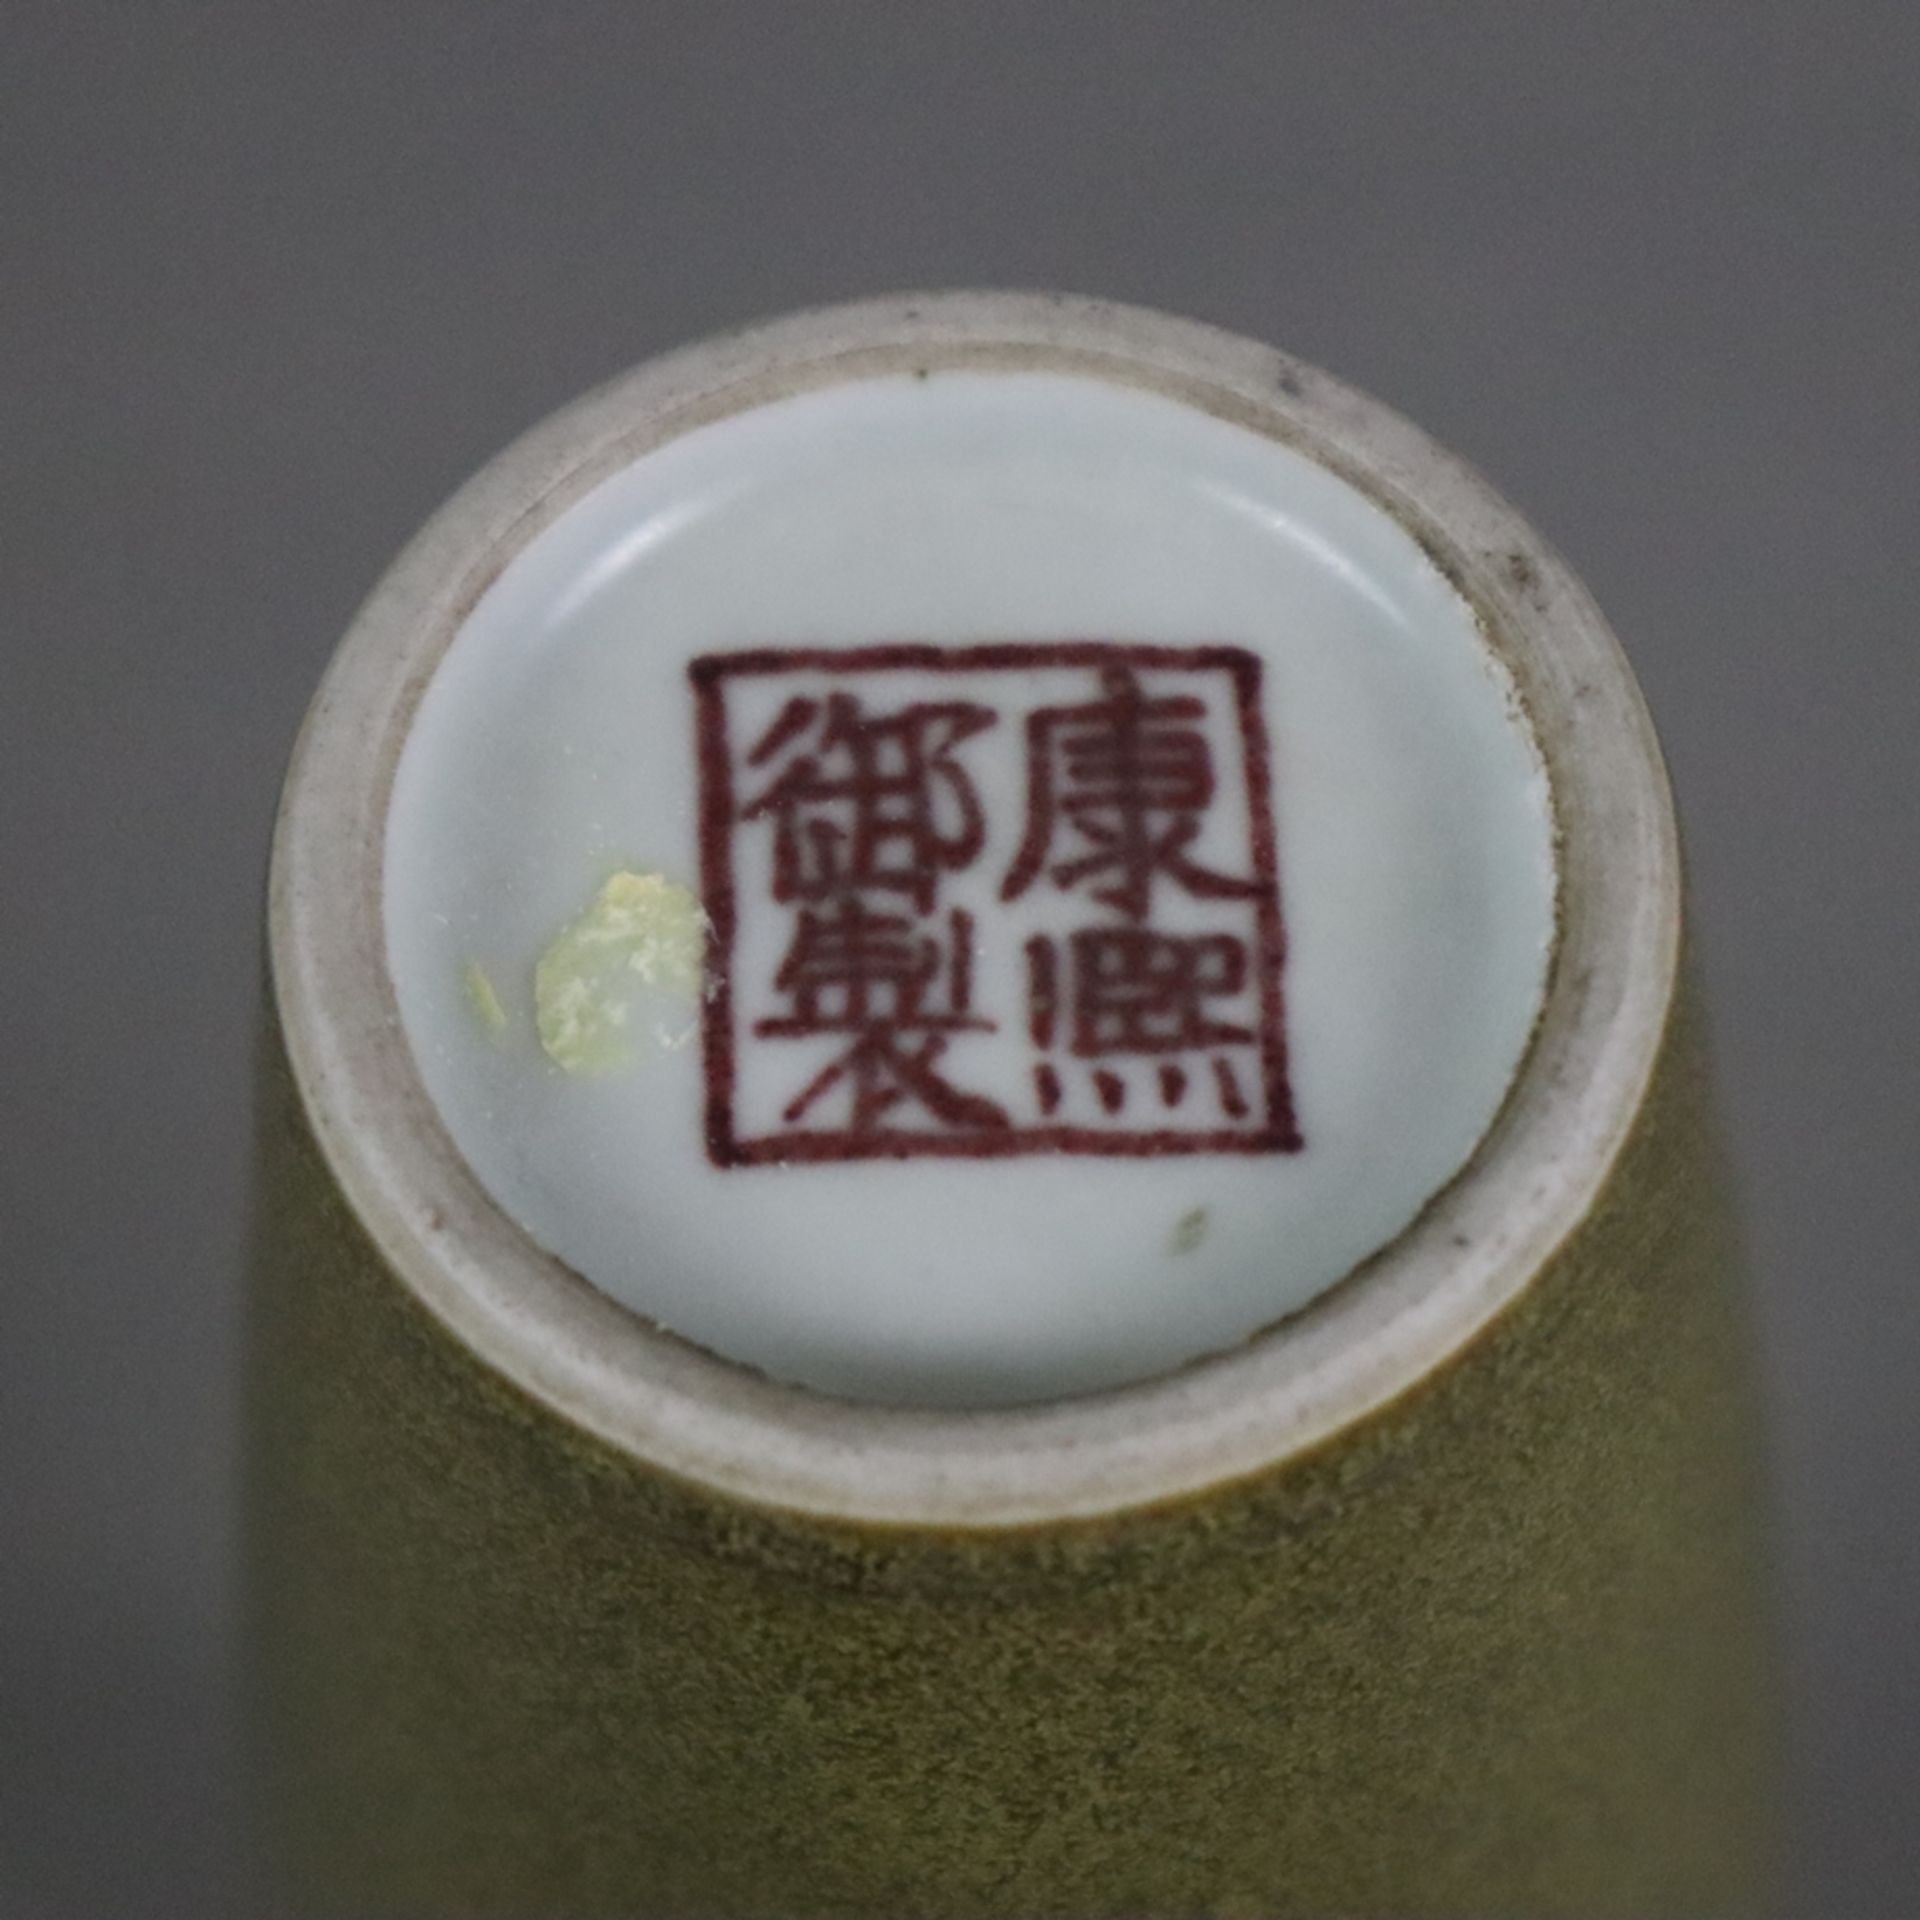 Kleine Flaschenvase - China 20.Jh., Porzellan mit "Teedust"-Glasur, innen und unterseitig transpare - Bild 7 aus 7